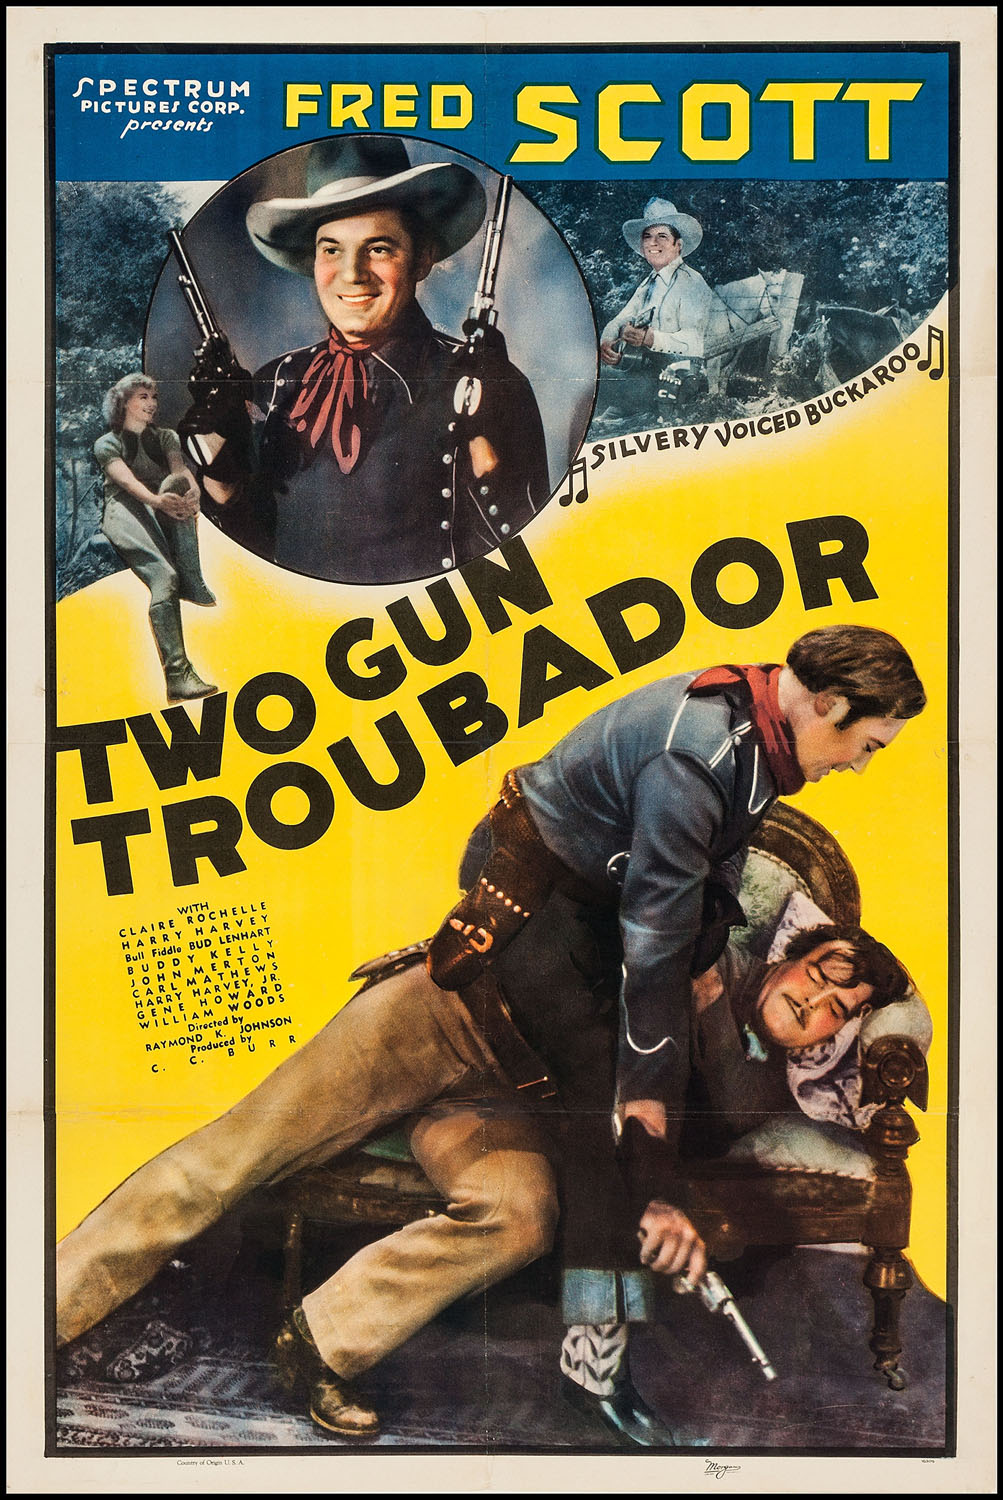 TWO GUN TROUBADOR